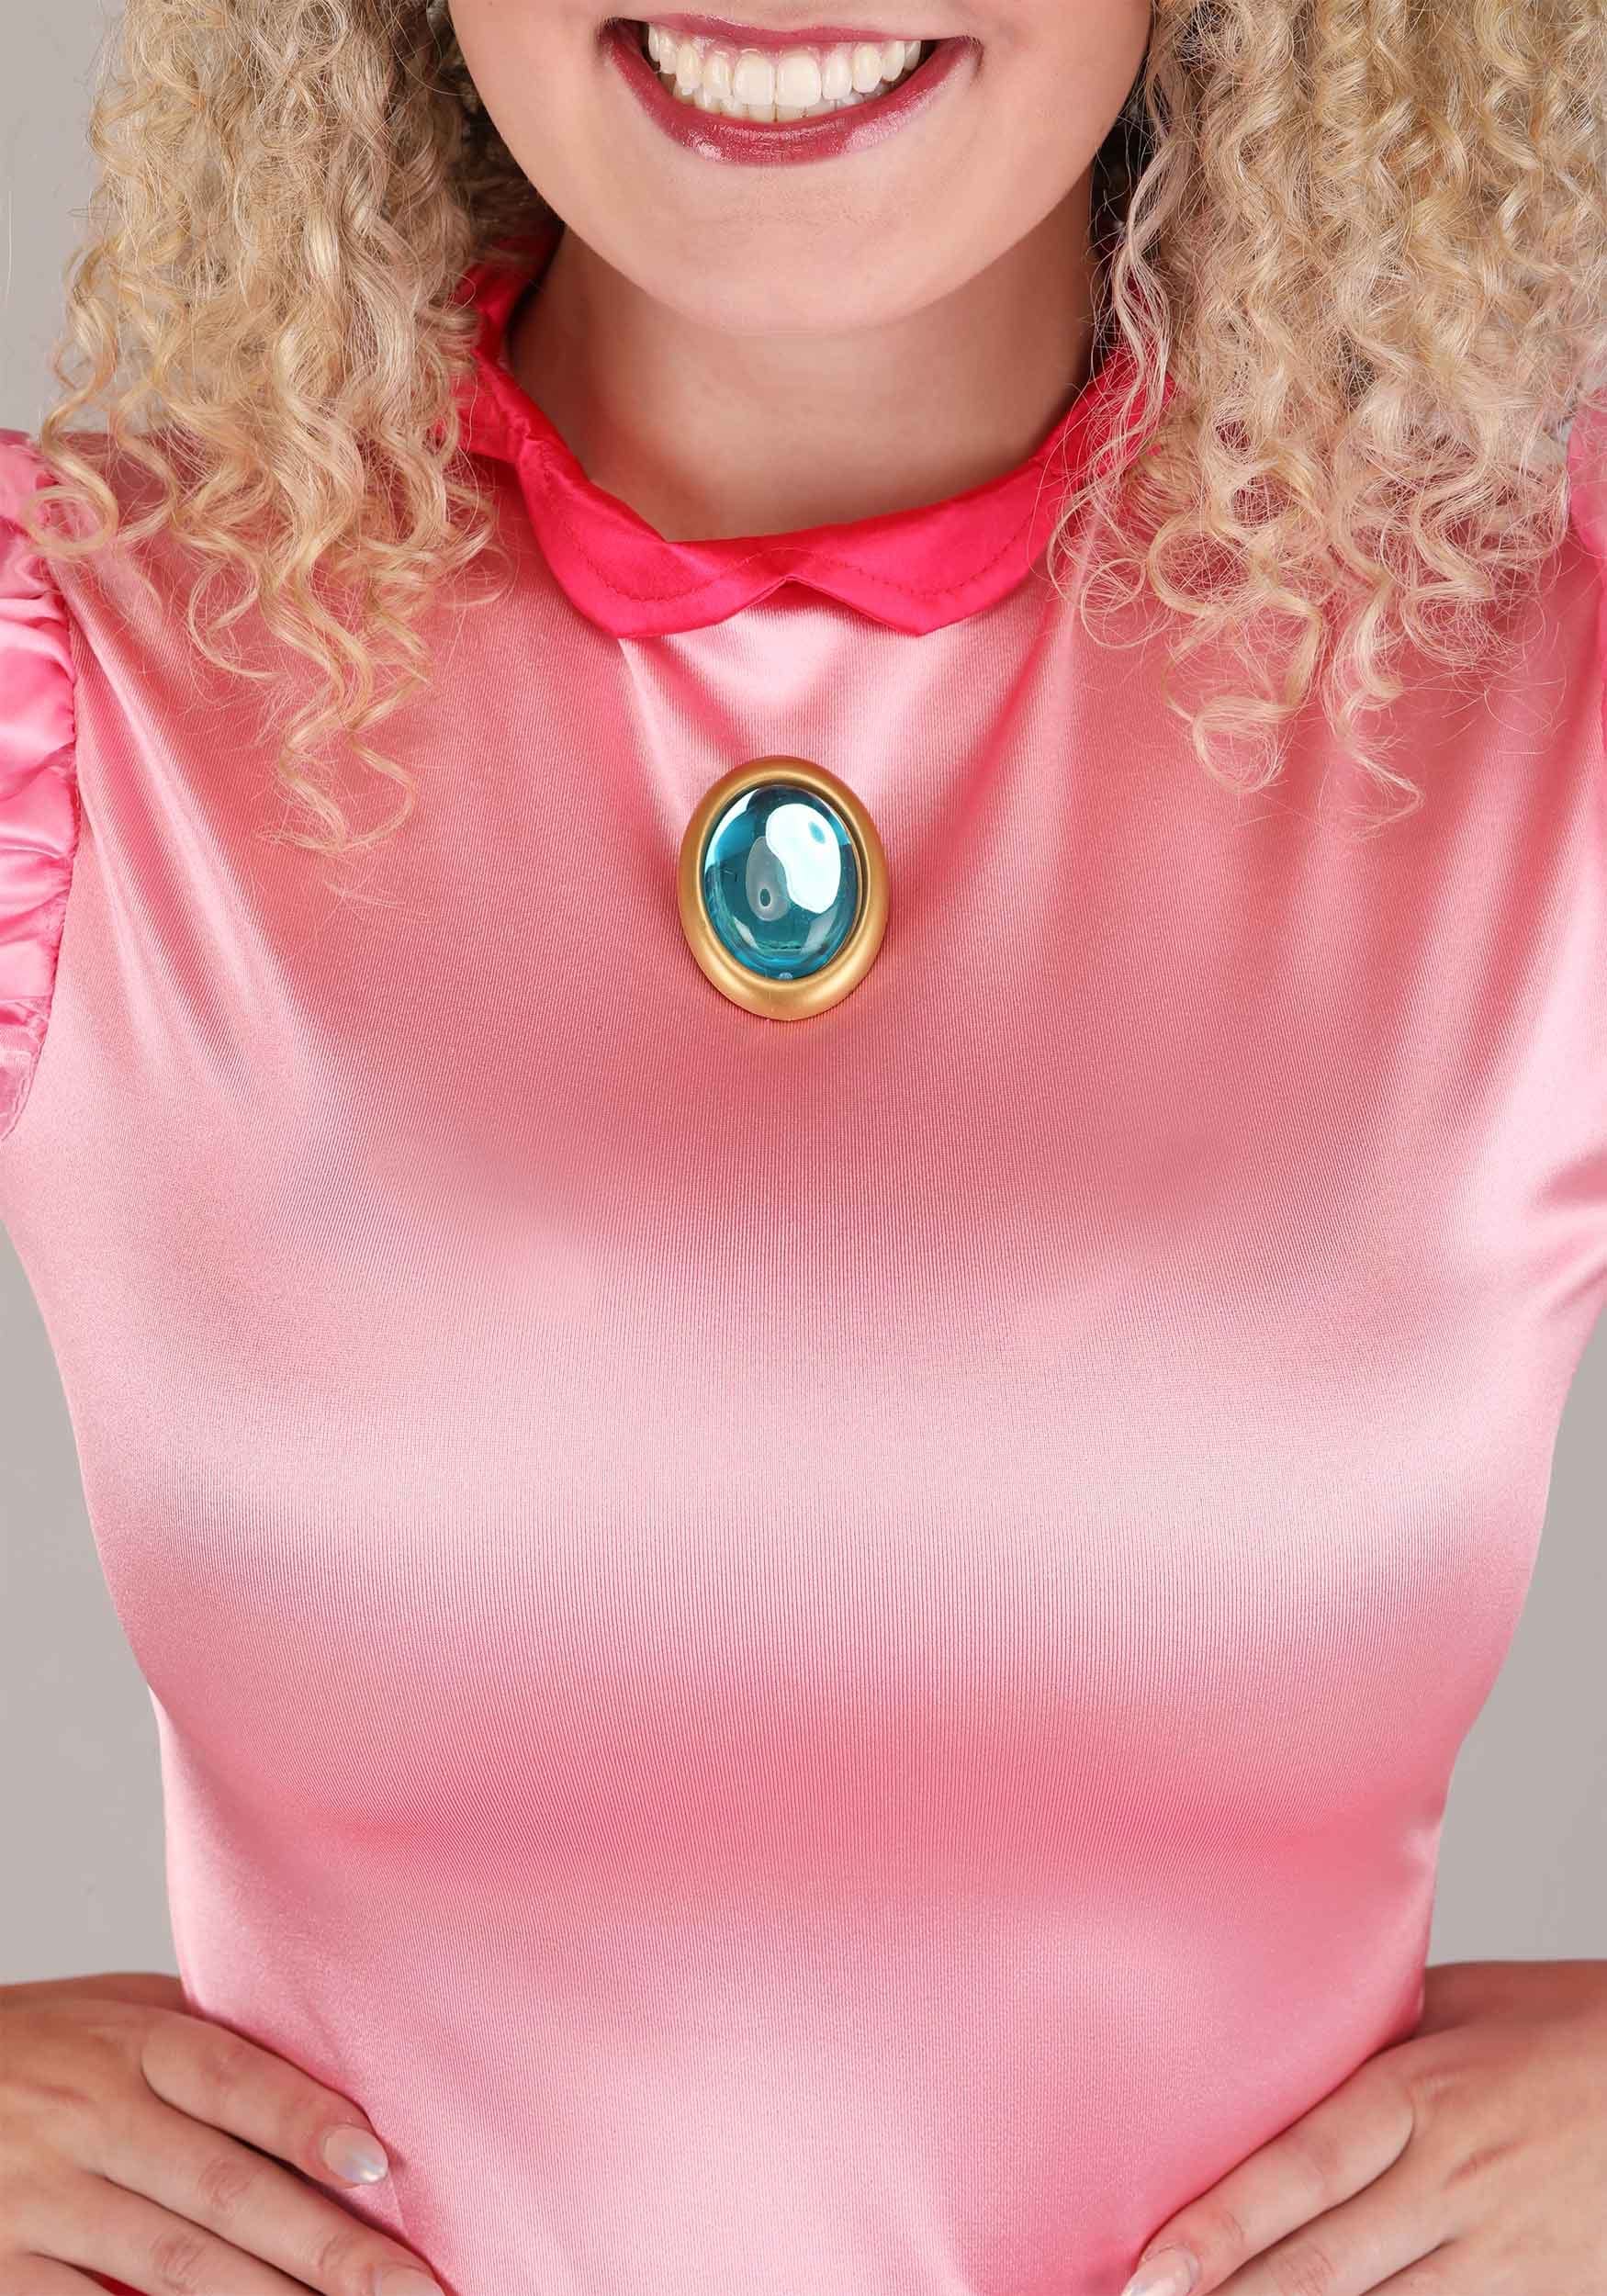 Deluxe Super Mario Princess Peach Costume for Women